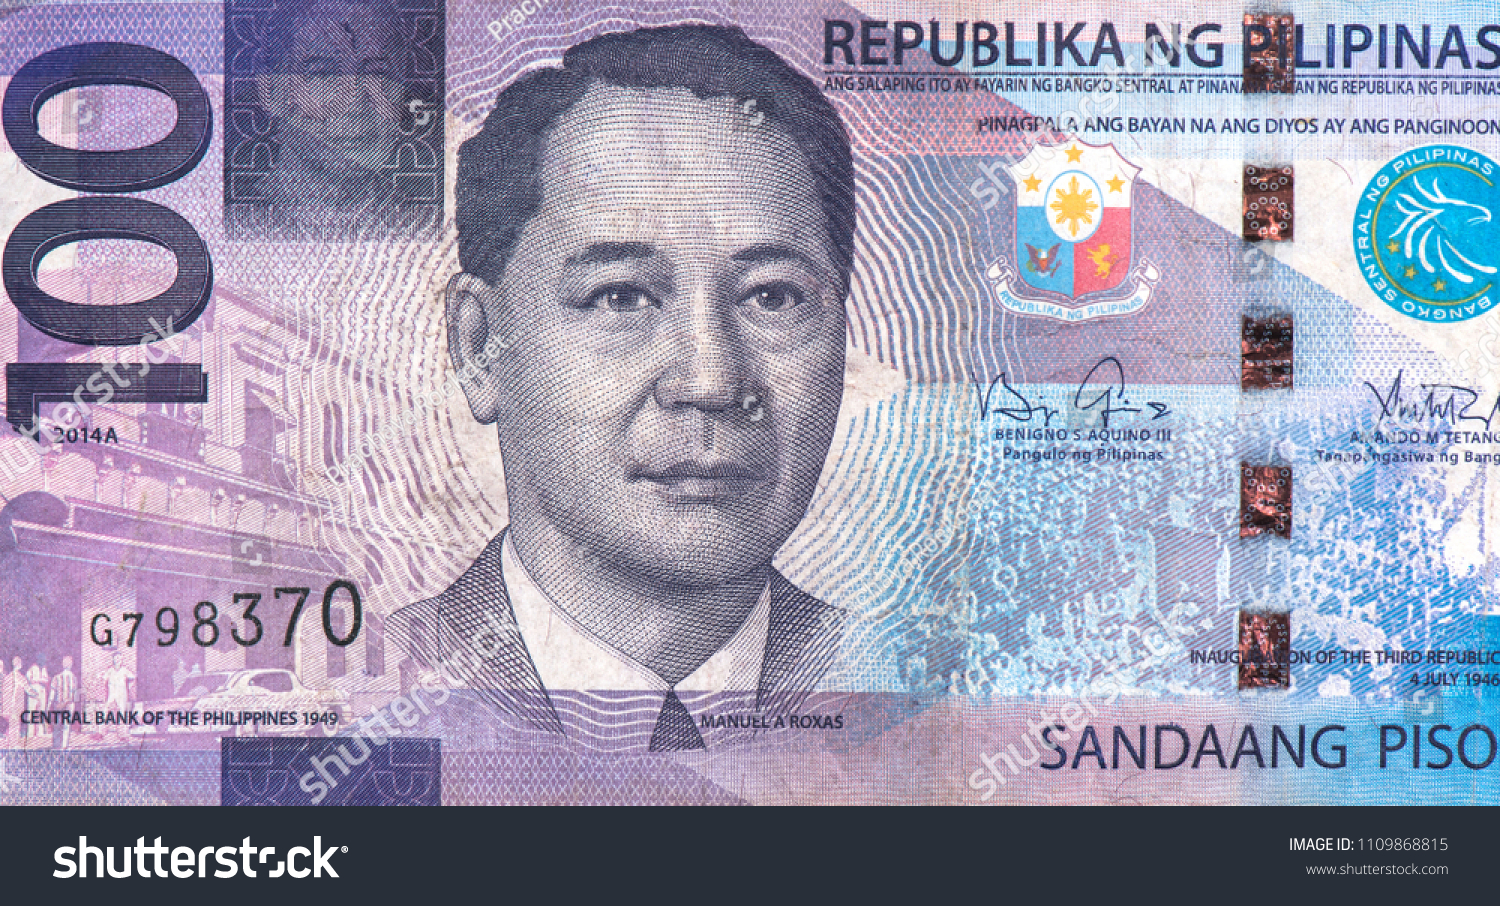 Филиппинские деньги. Филиппинское песо. Валюта Филиппин. Деньги Филиппин. Филиппины валюта филиппинский песо.